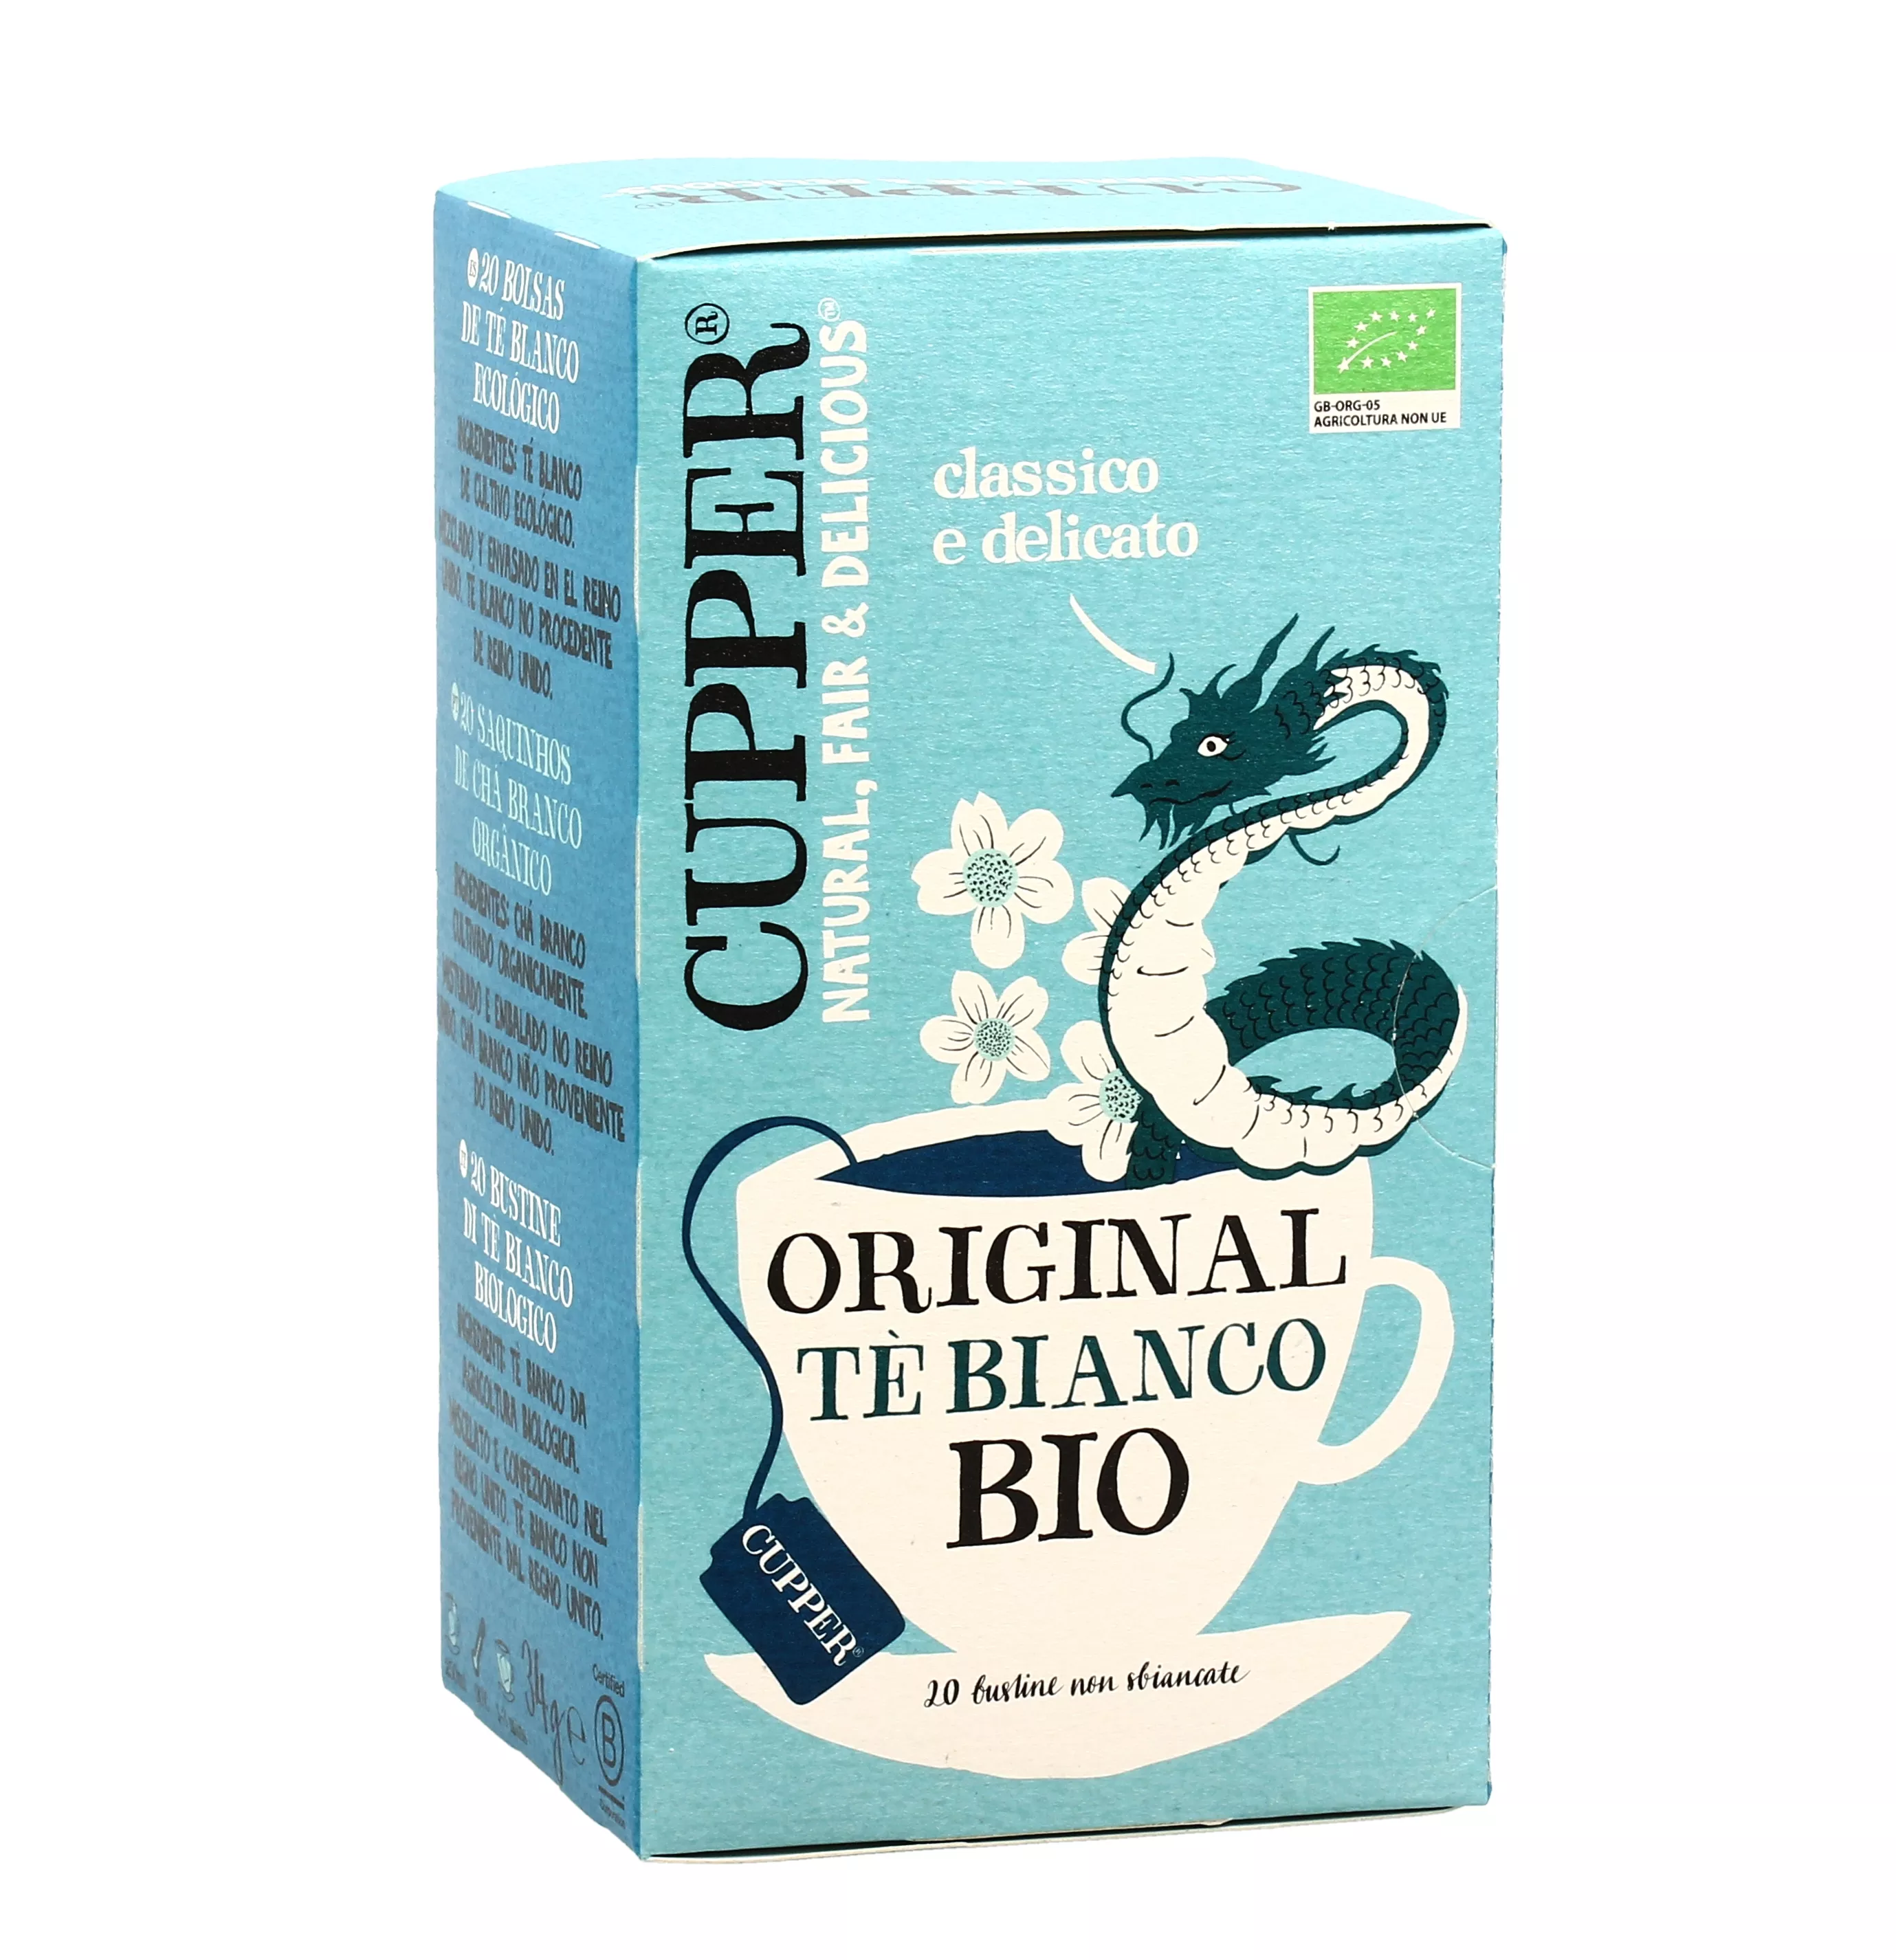 Tè Bianco Bio Original - Cupper